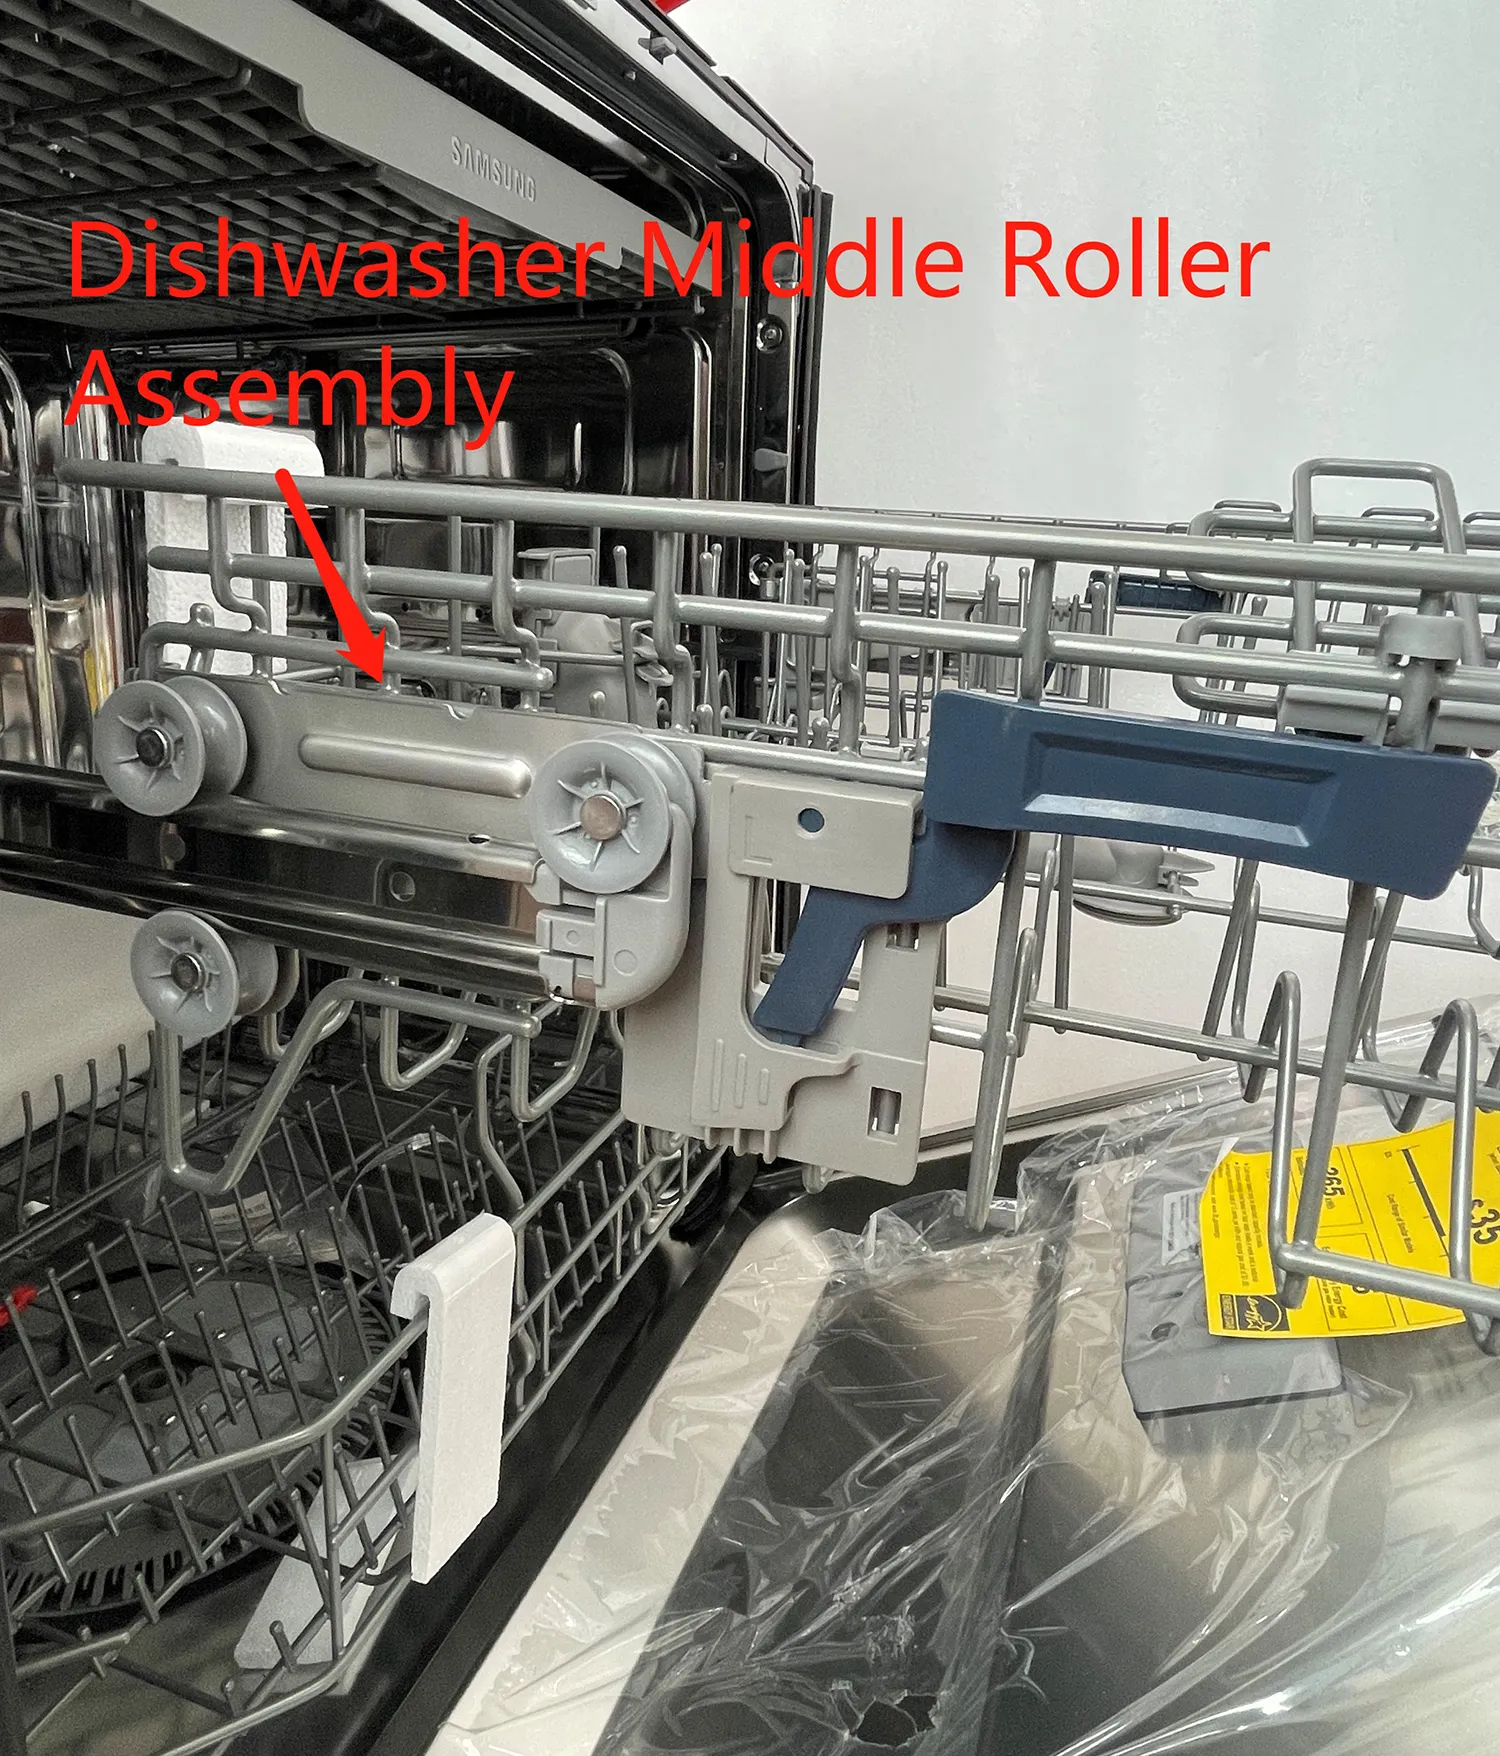 DD97-00122A Geschirrwaschmaschinenkorb Einstellhalterung, linke Seite- Geschirrwaschmaschine mittlere Walze Montage linkses Edelstahl-Radgestell